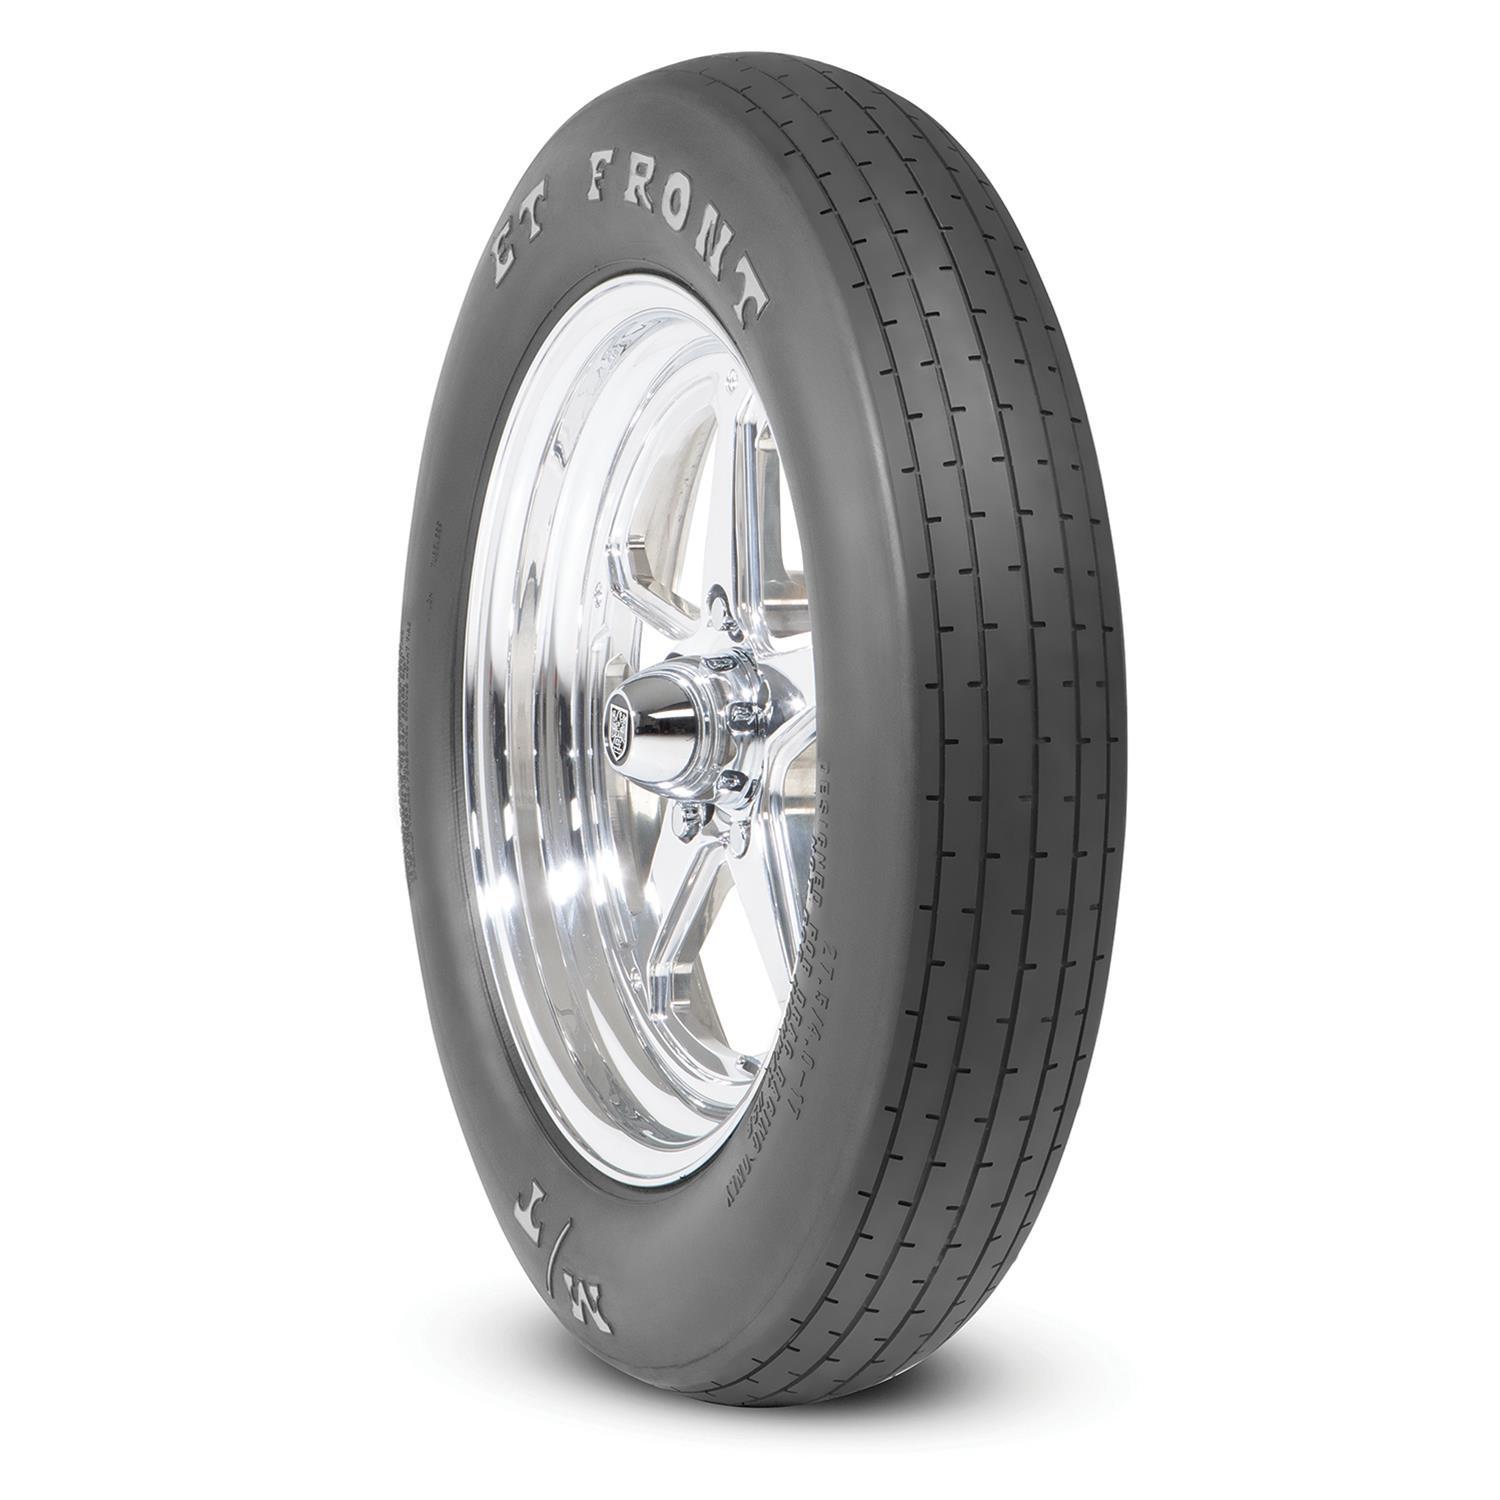 26x4-17 ET Drag Front Tire - 250923